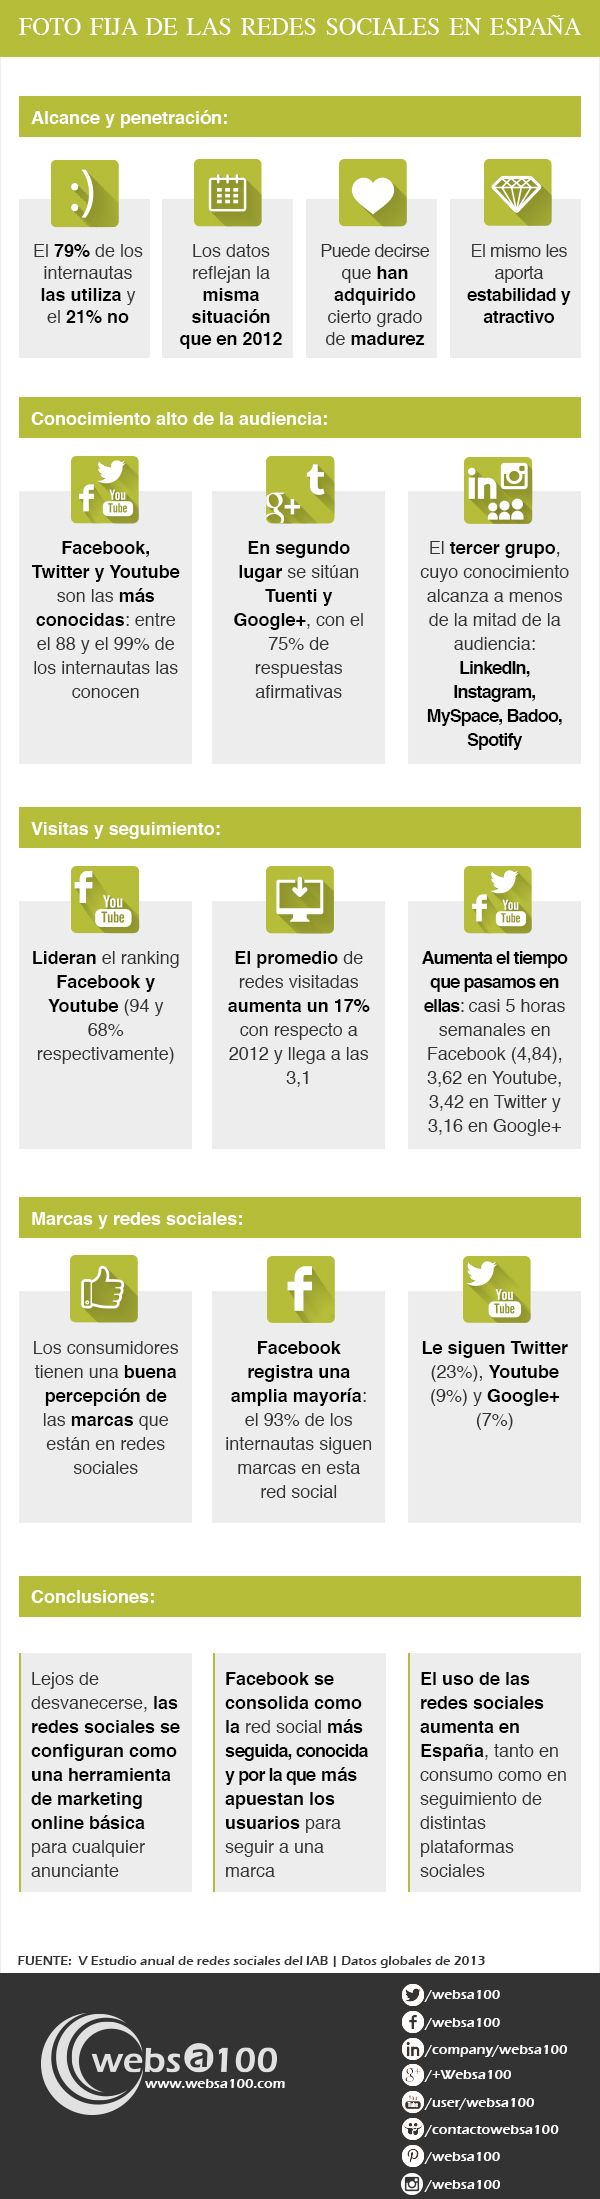 Las redes sociales en España